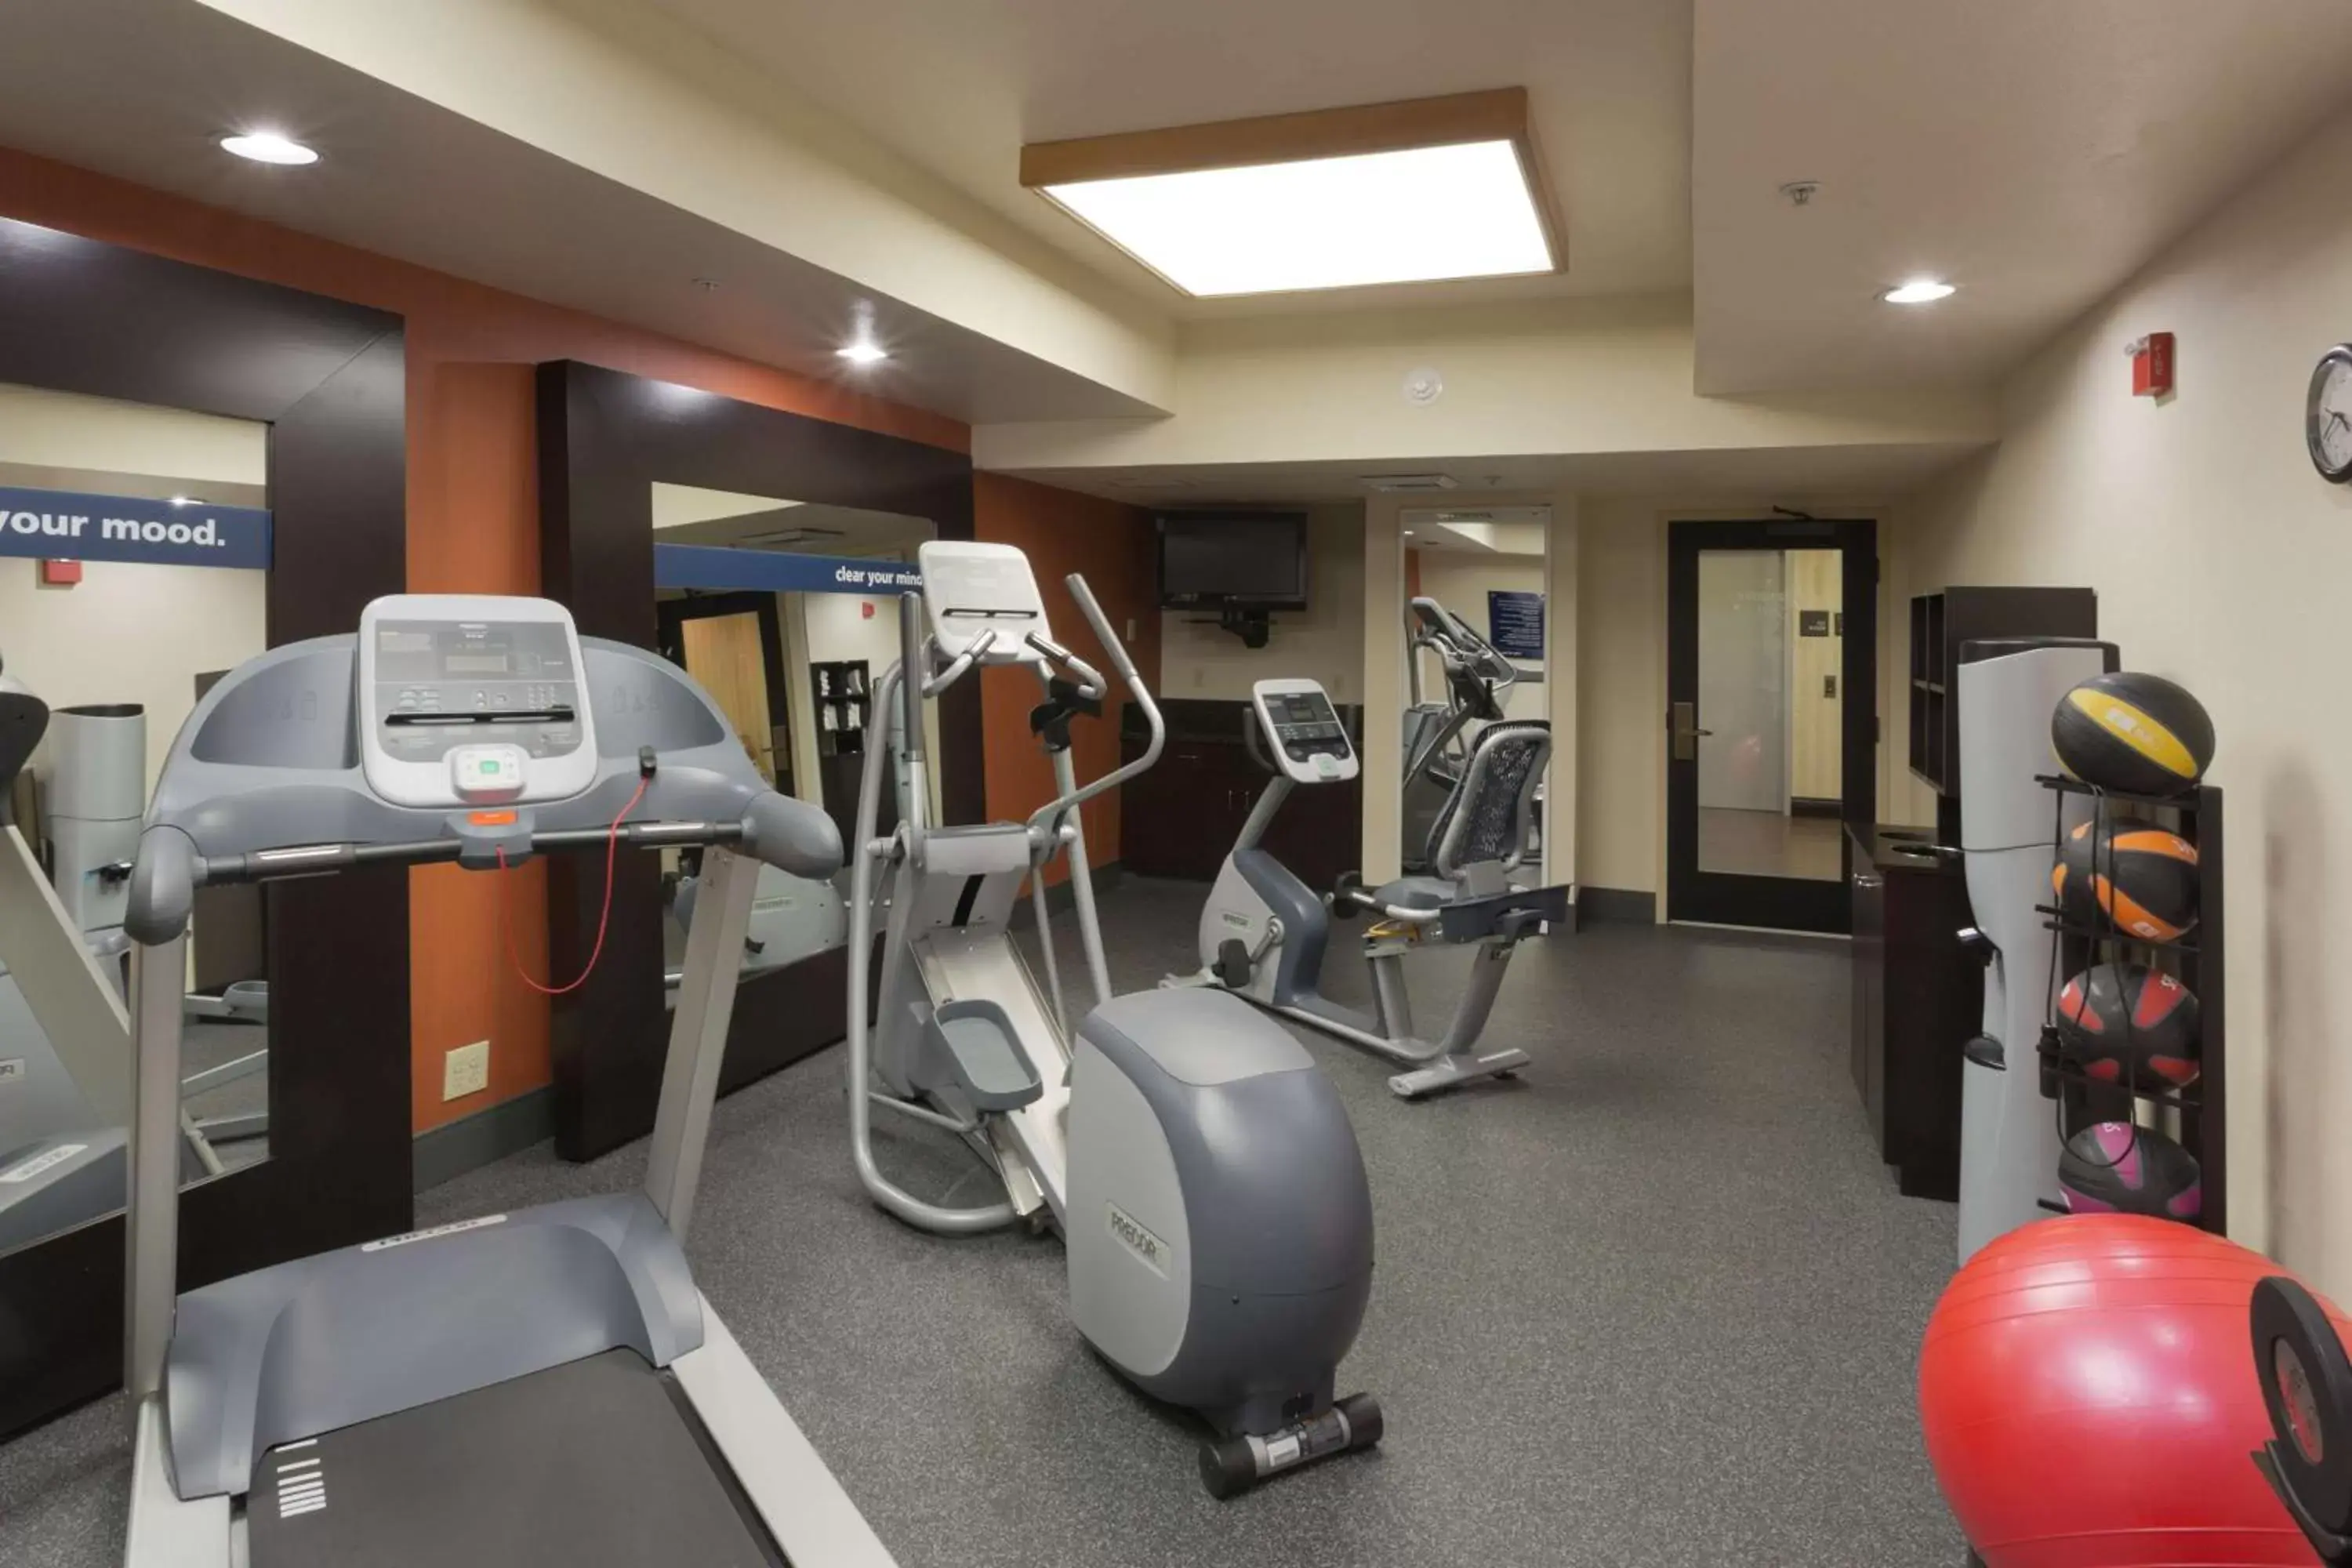 Fitness centre/facilities, Fitness Center/Facilities in Hampton Inn Las Vegas/Summerlin